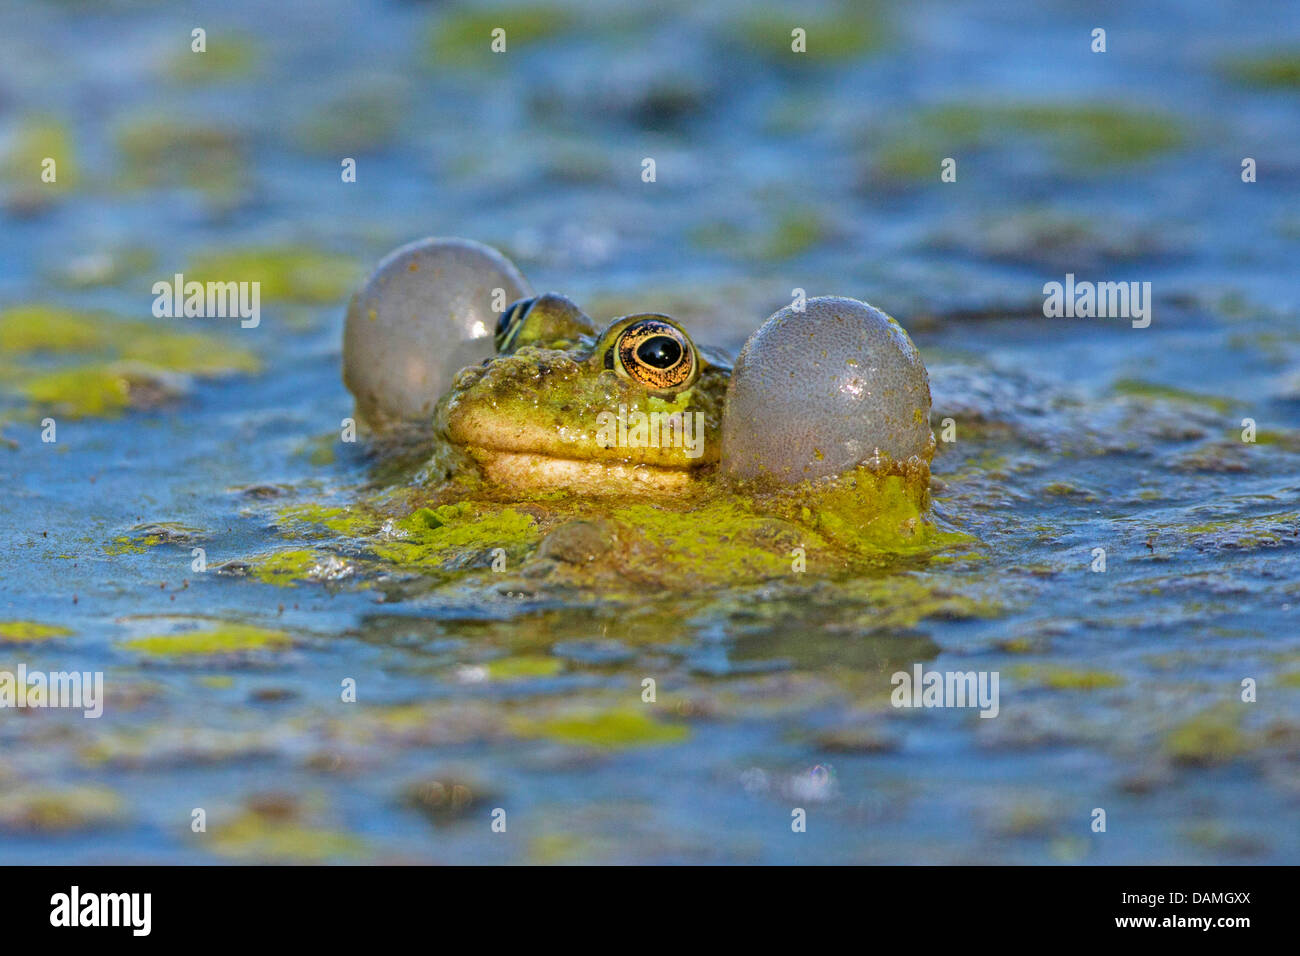 marsh frog, lake frog (Rana ridibunda, Pelophylax ridibundus), with large vocal sacks, calling, Germany, Bavaria, Isental Stock Photo